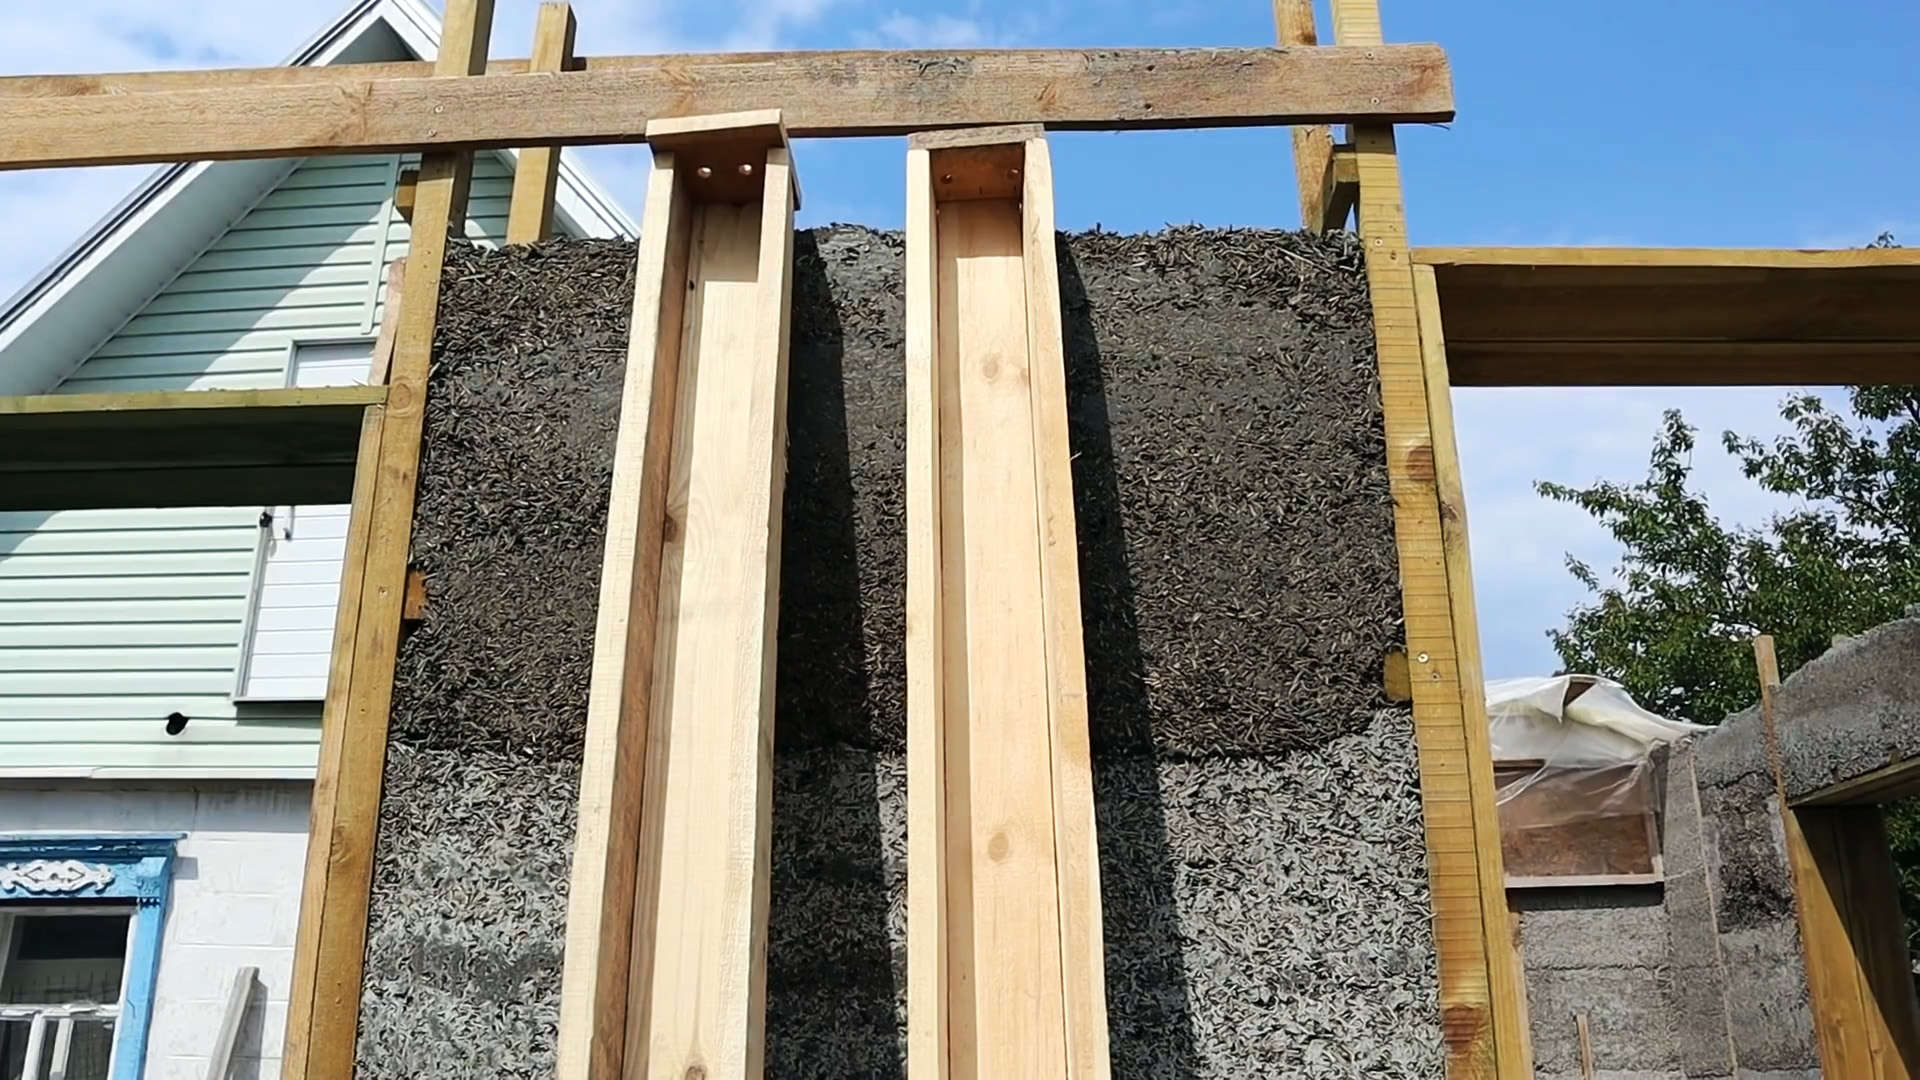 Простая технология изготовления ровных аккуратных бетонных столбиков в домашних условиях